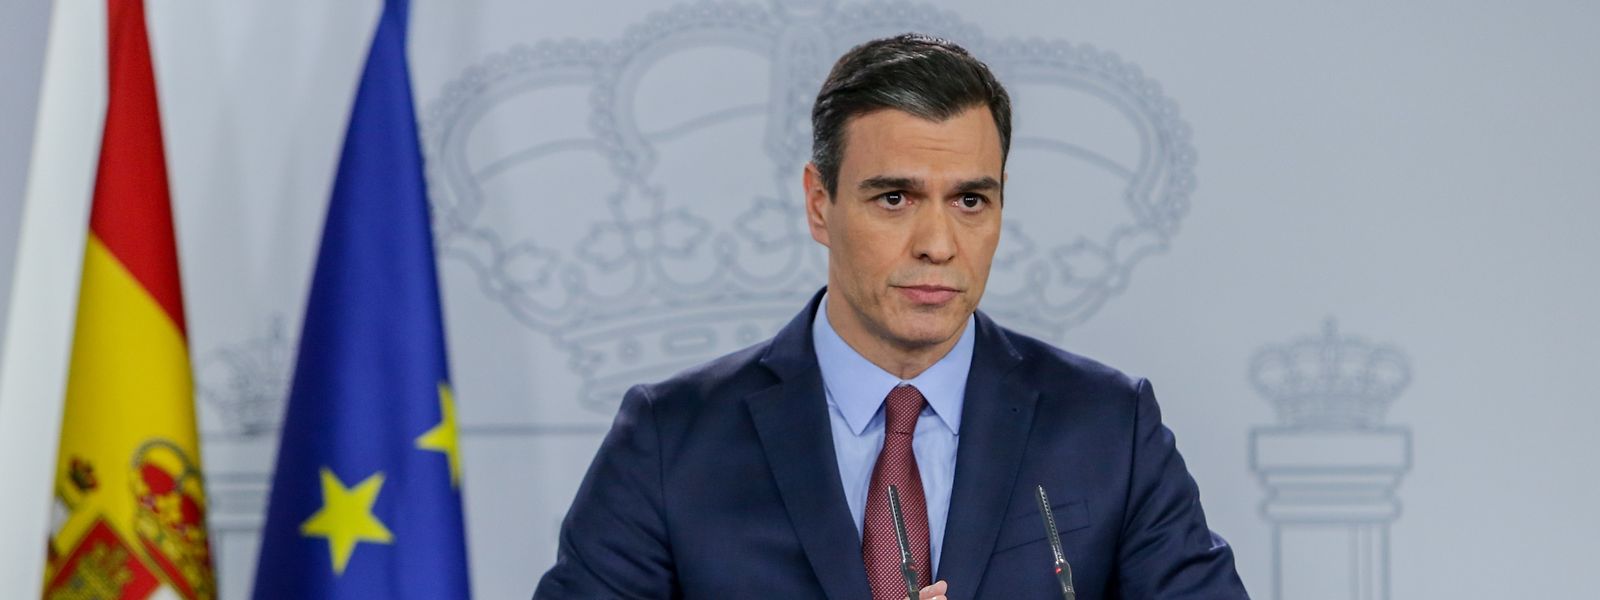 Spaniens Ministerpräsident Pedro Sanchez sprach von einer "außerordentlichen Krise".